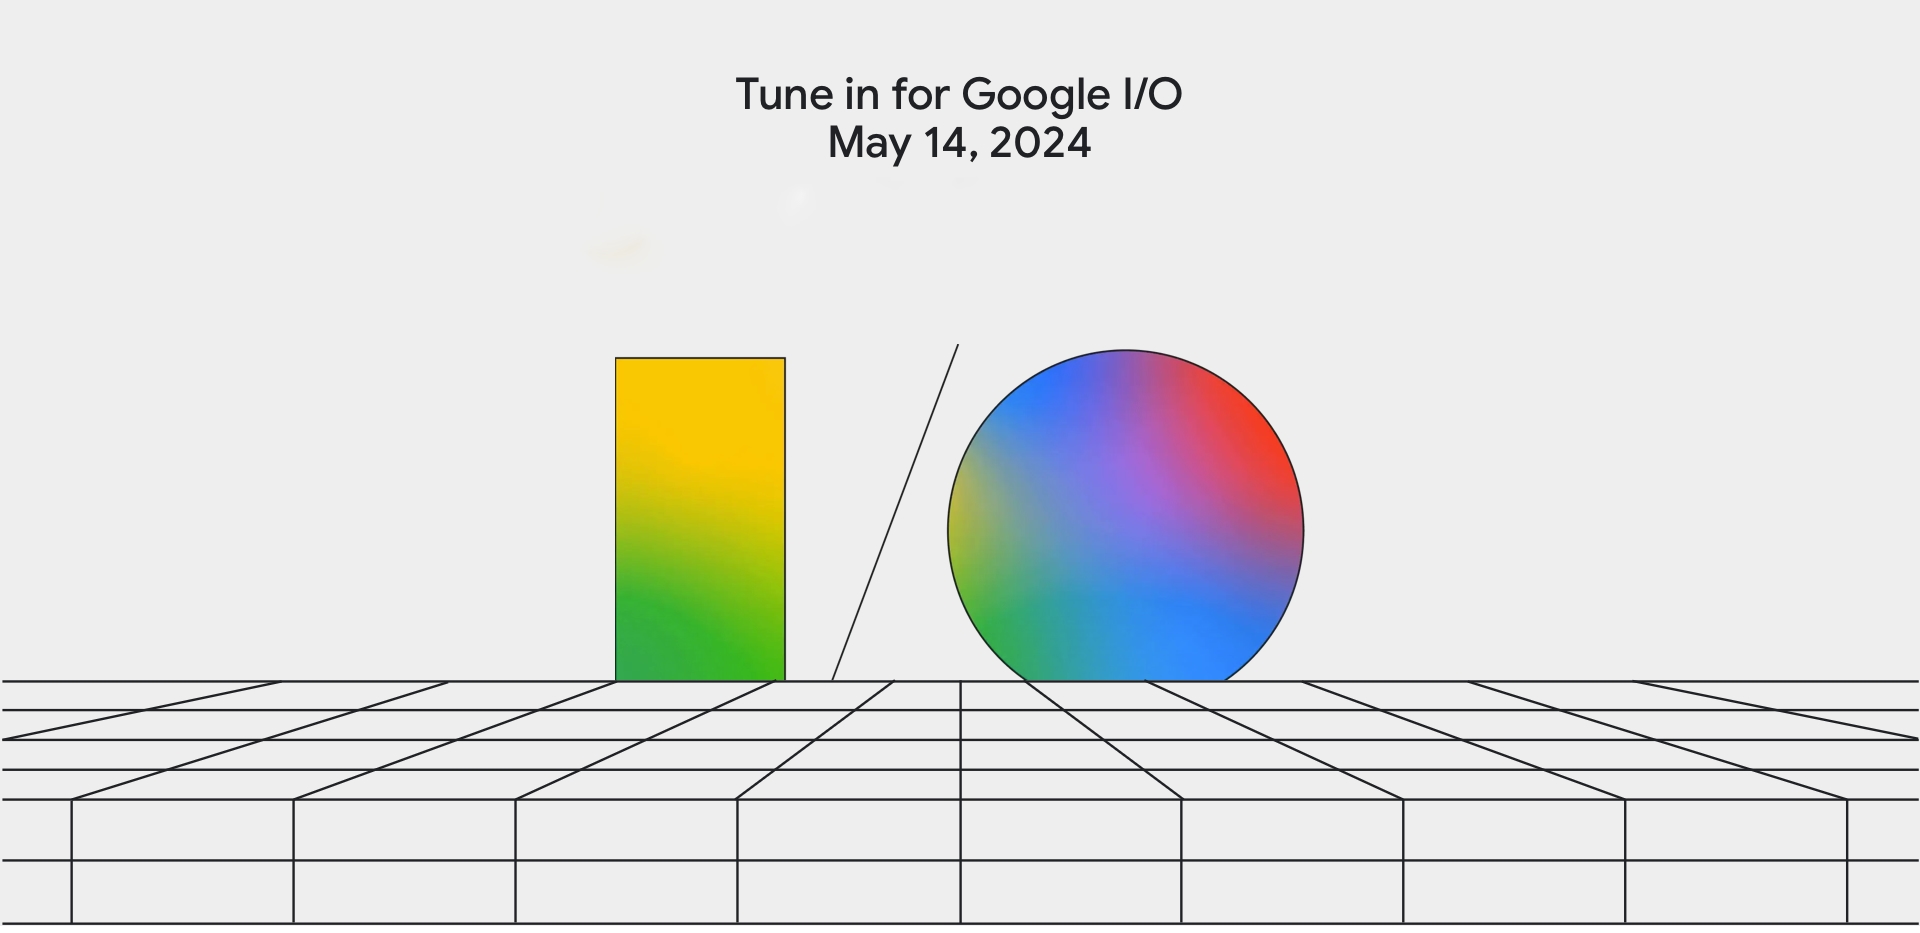 Ya es oficial: Google celebrará su conferencia I/O 2024 en la primera quincena de mayo